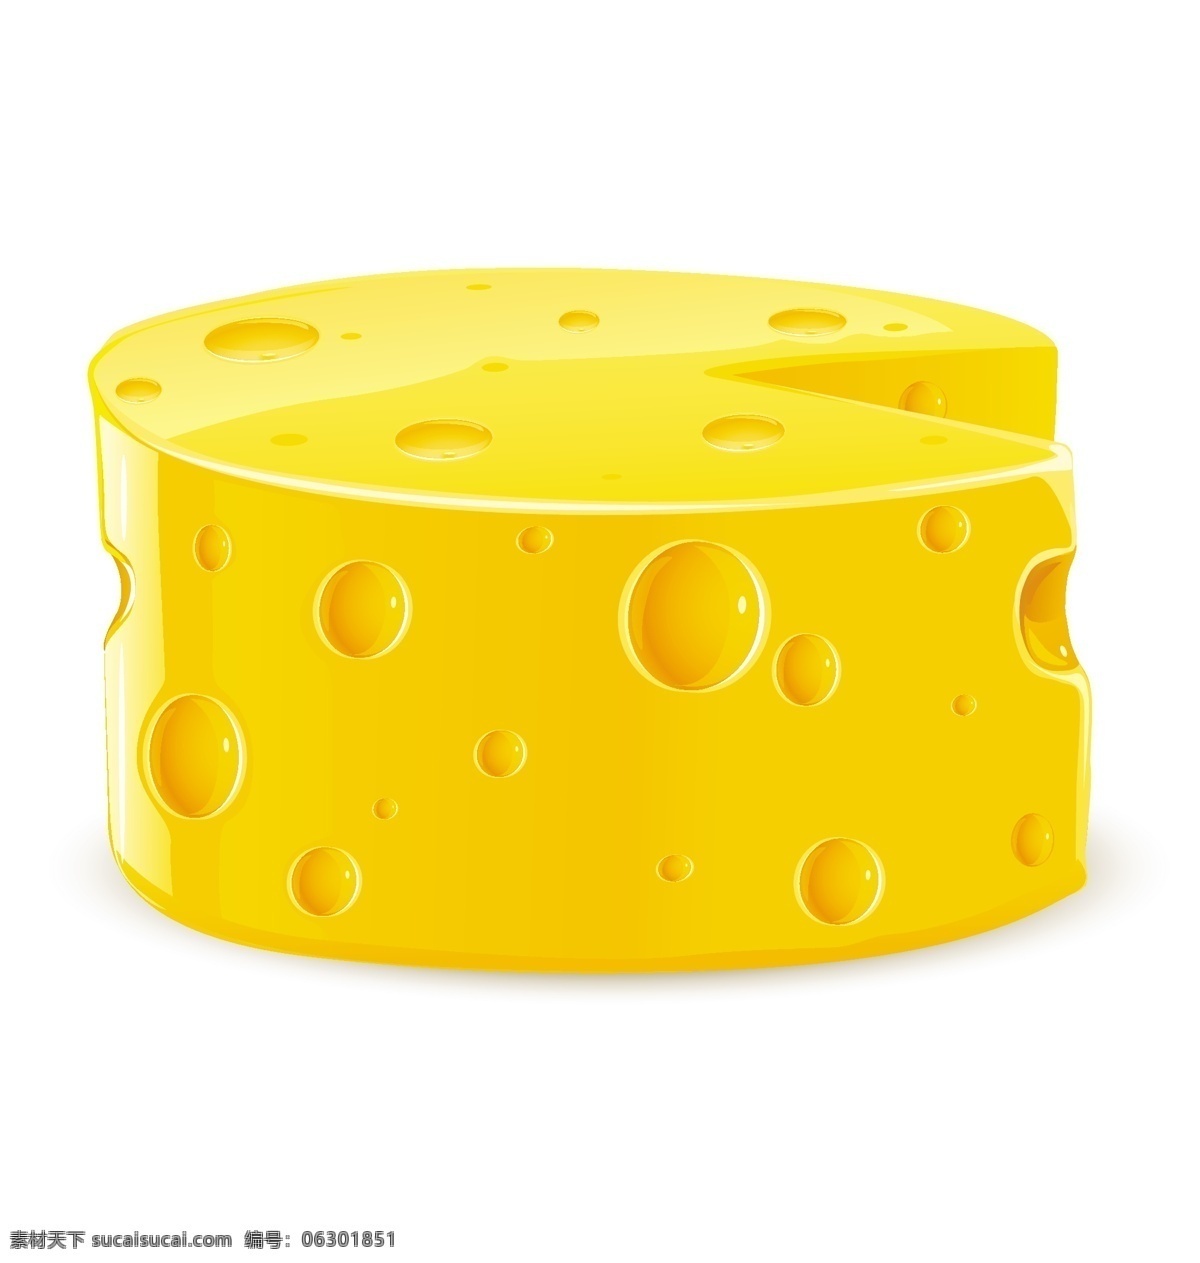 各种 形状 奶酪 载体材料 有吸引力的 食品 金黄色 学者 白色